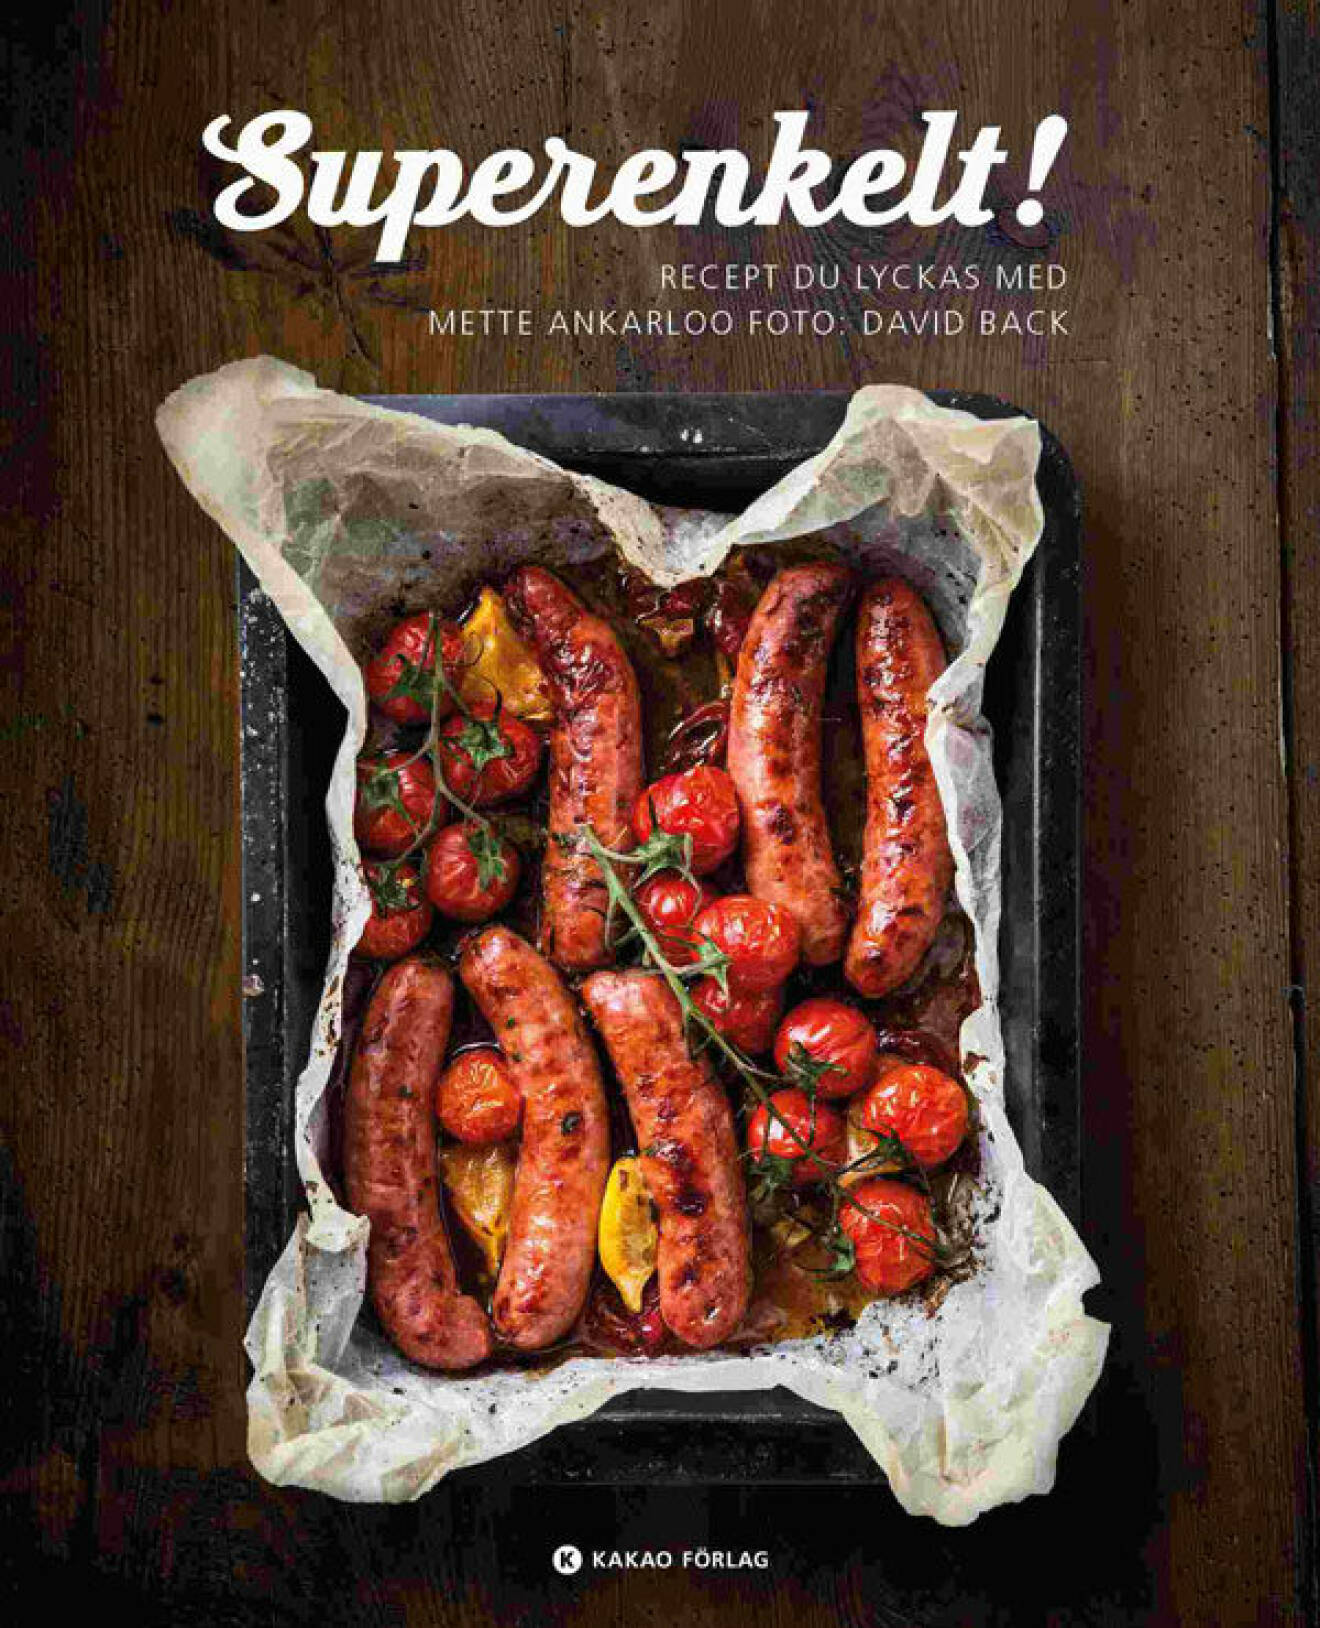 Kokboken Superenkelt – recept du lyckas med av Mette Ankarloo